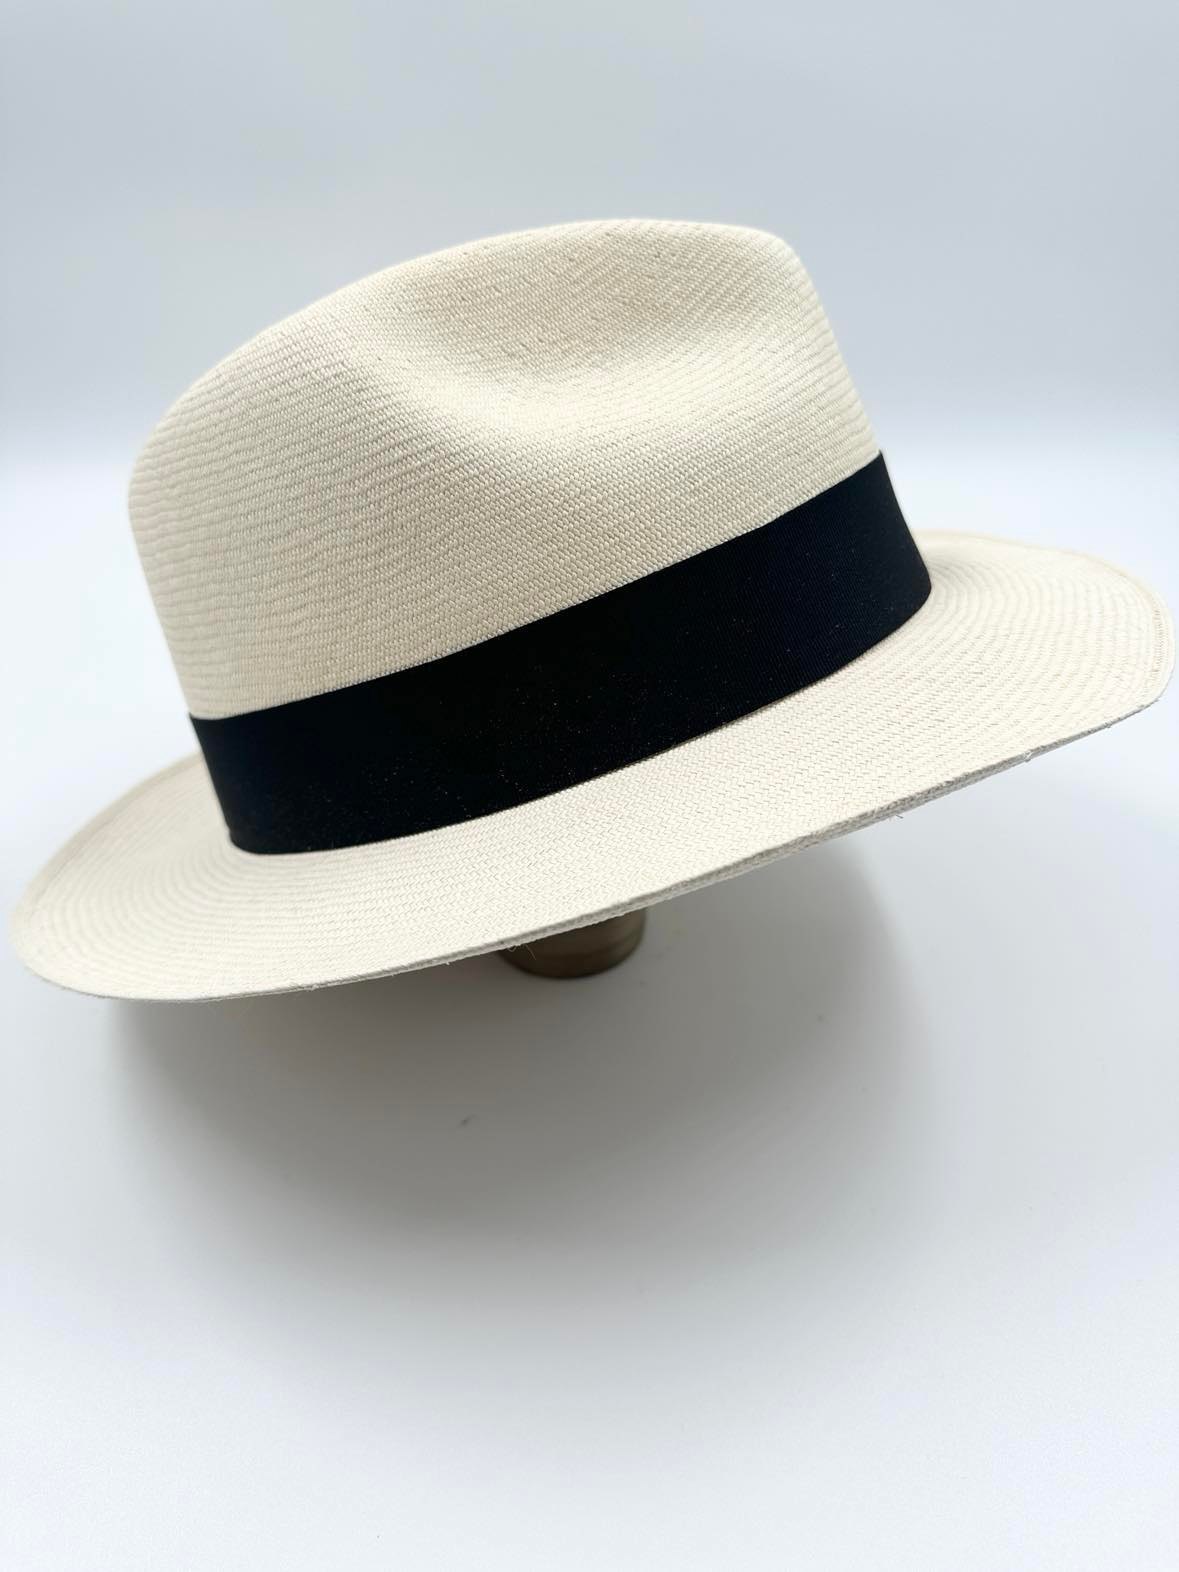 Ægte Montecristi Fedora Panama Hat med en kvalitet på 21-22 fletninger pr. inch - ingen hatte er ens da de er håndflettede og unikke